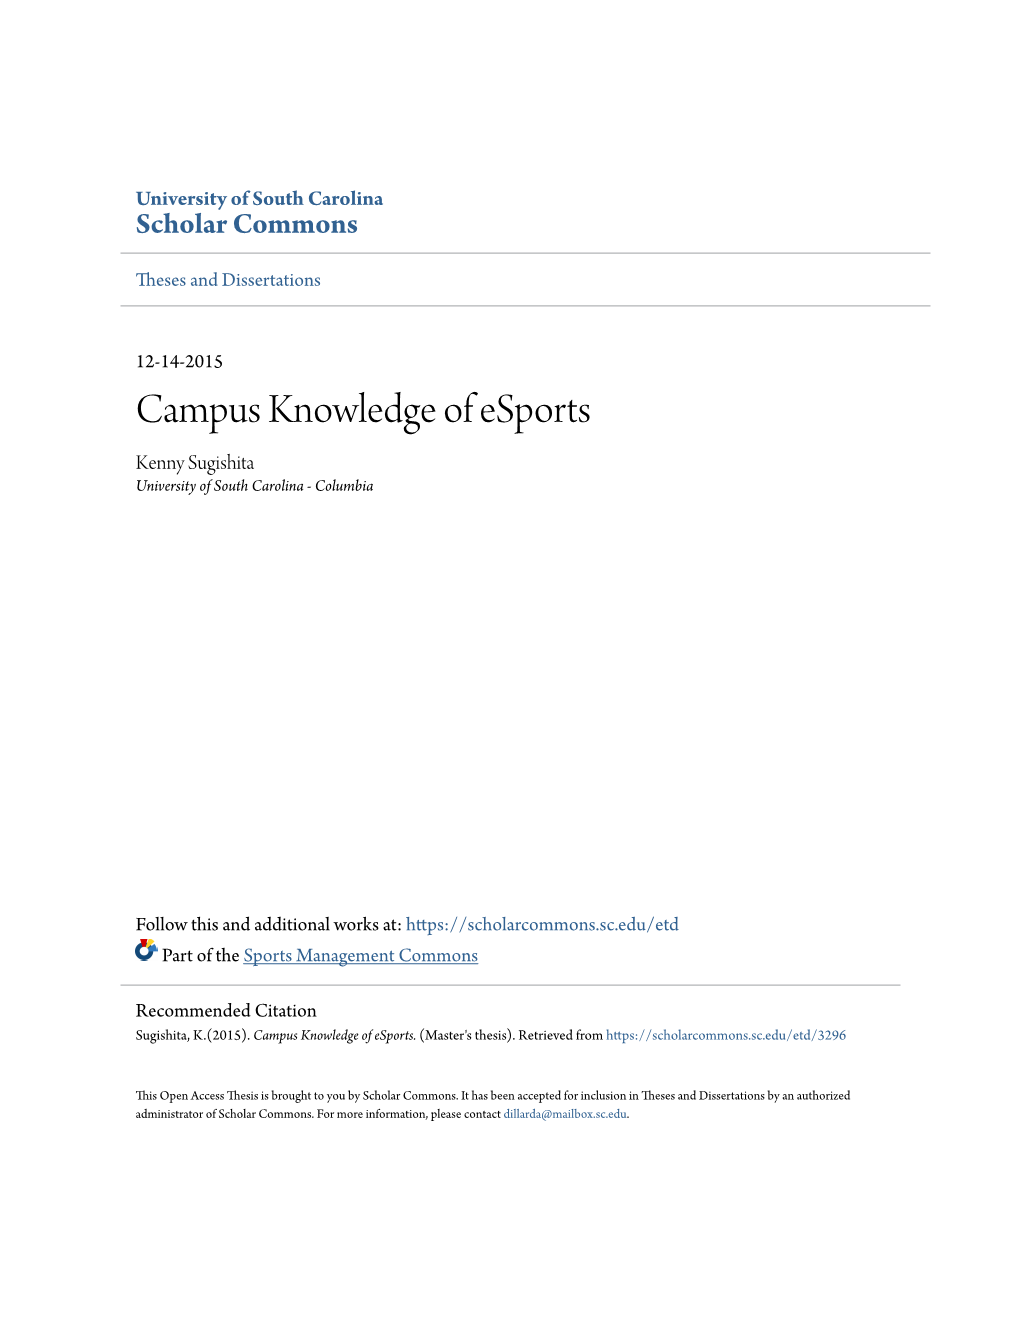 Campus Knowledge of Esports Kenny Sugishita University of South Carolina - Columbia